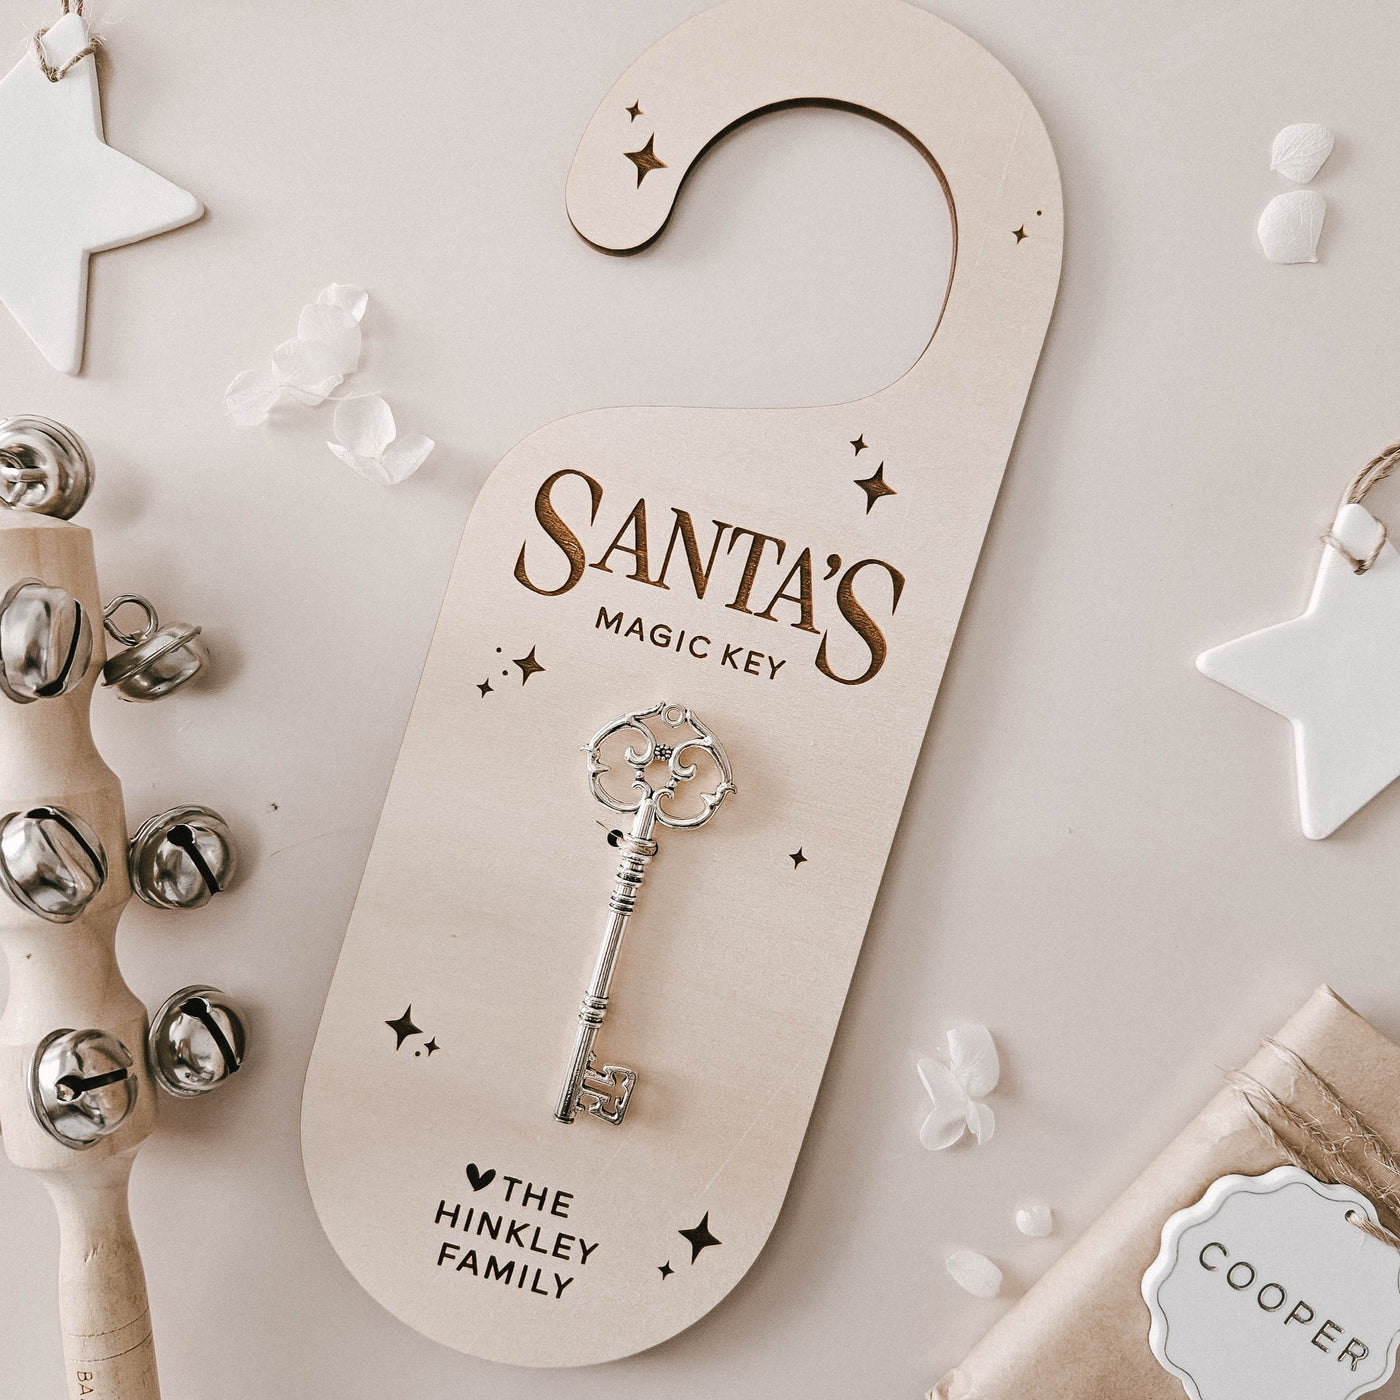 Santa's Magic Key | Santa Clause